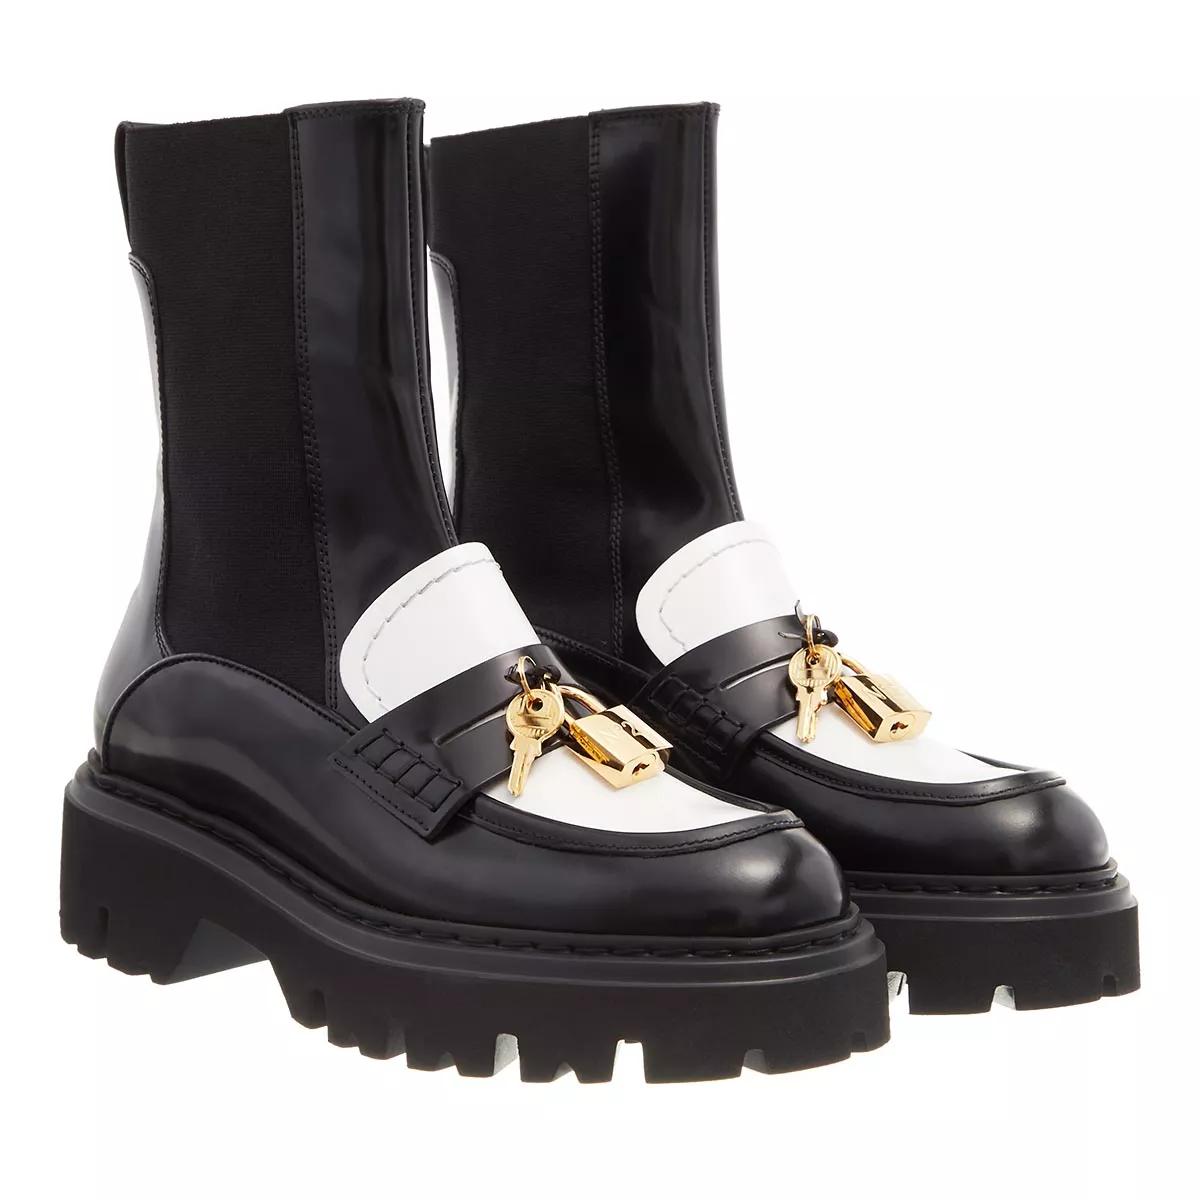 N°21 Boots & Stiefeletten - Boots Brushed Leather - Gr. 40 (EU) - in Schwarz - für Damen von N°21